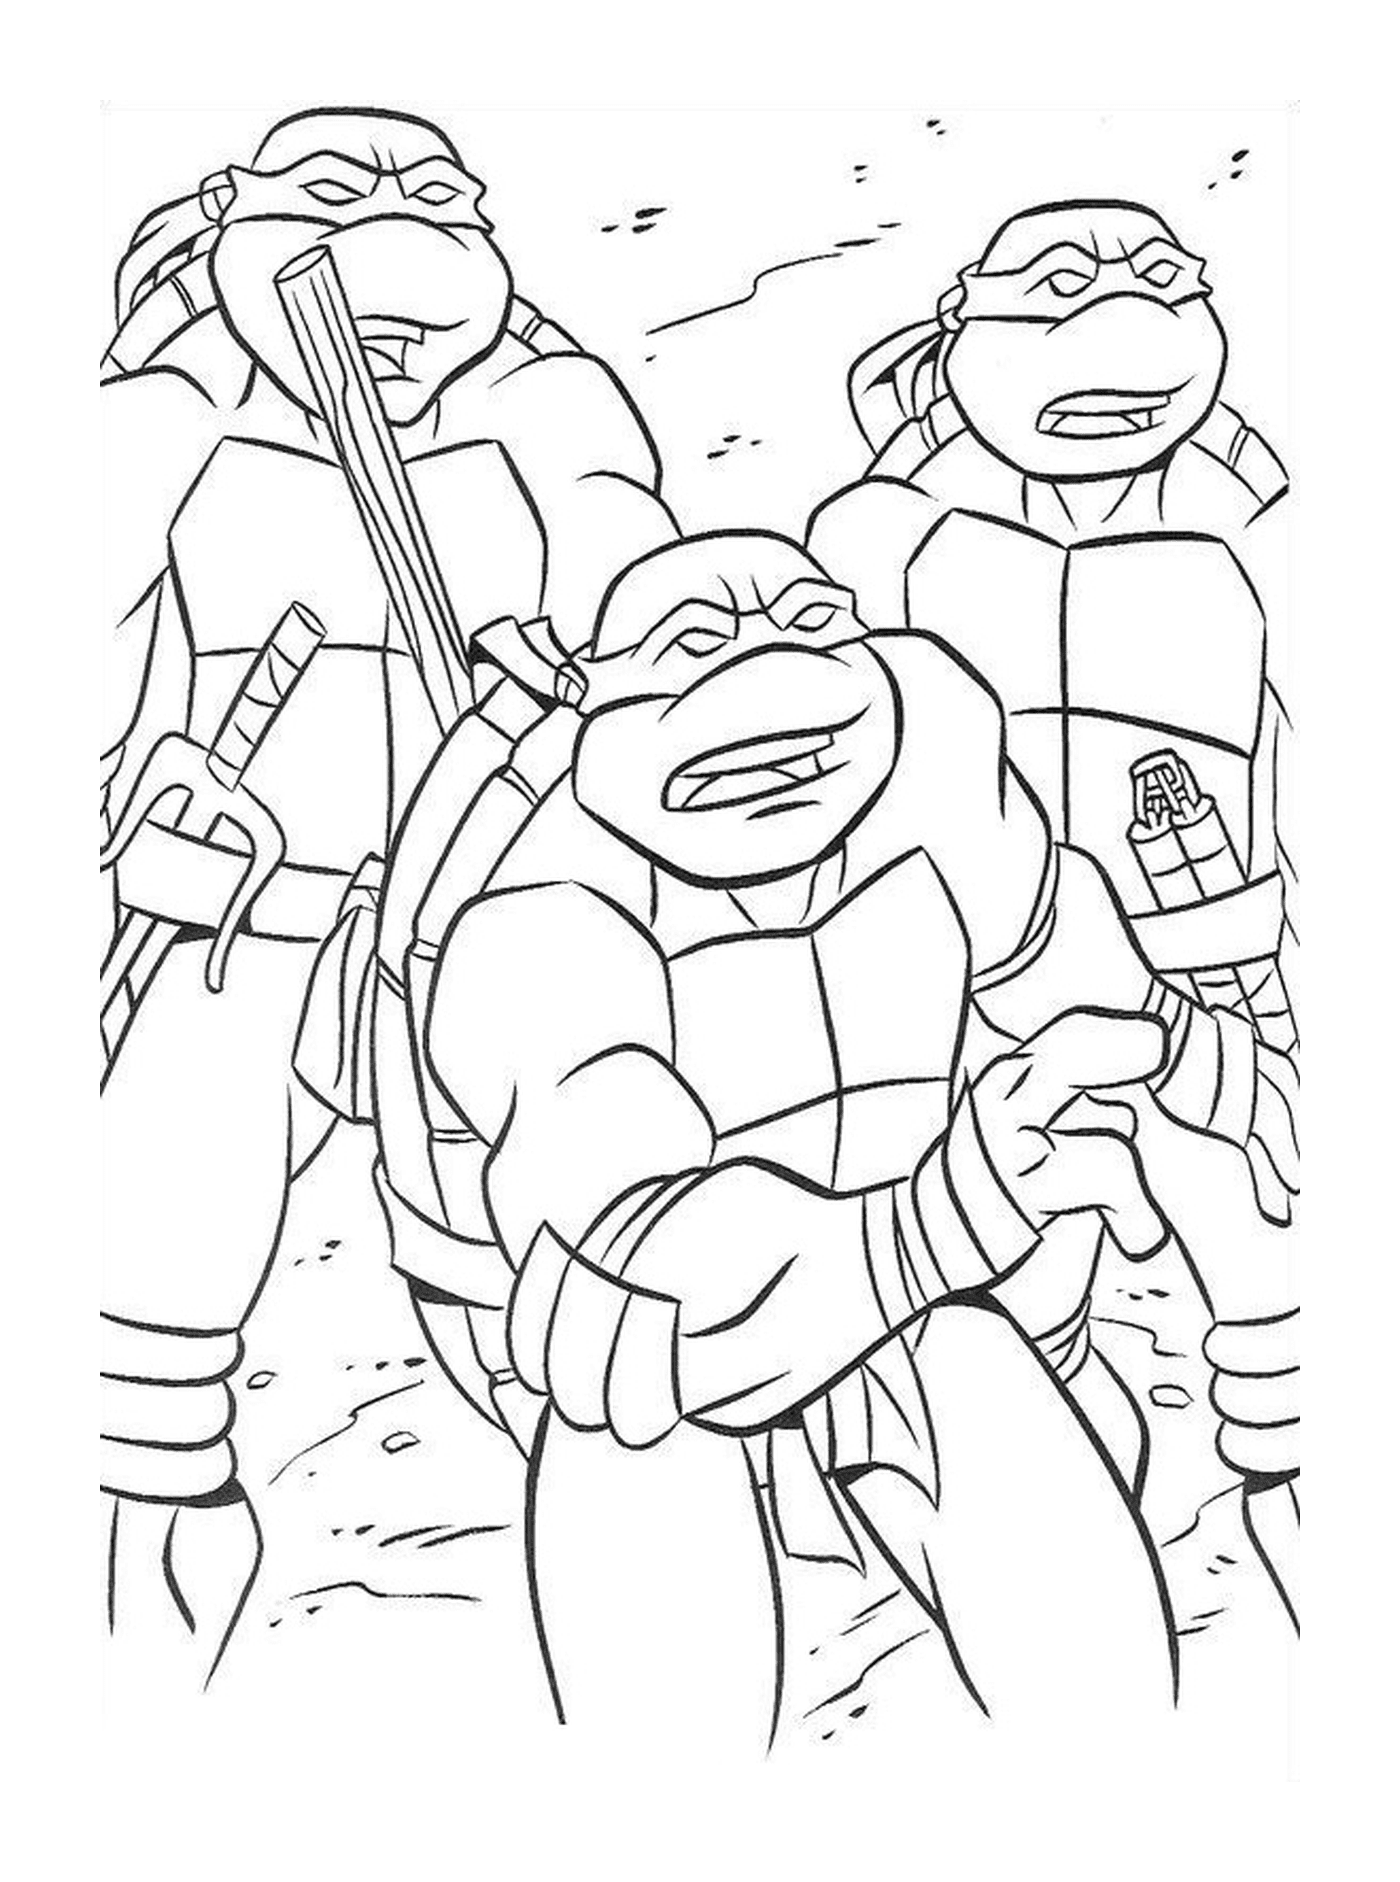   Groupe de tortues ninjas solidaires 